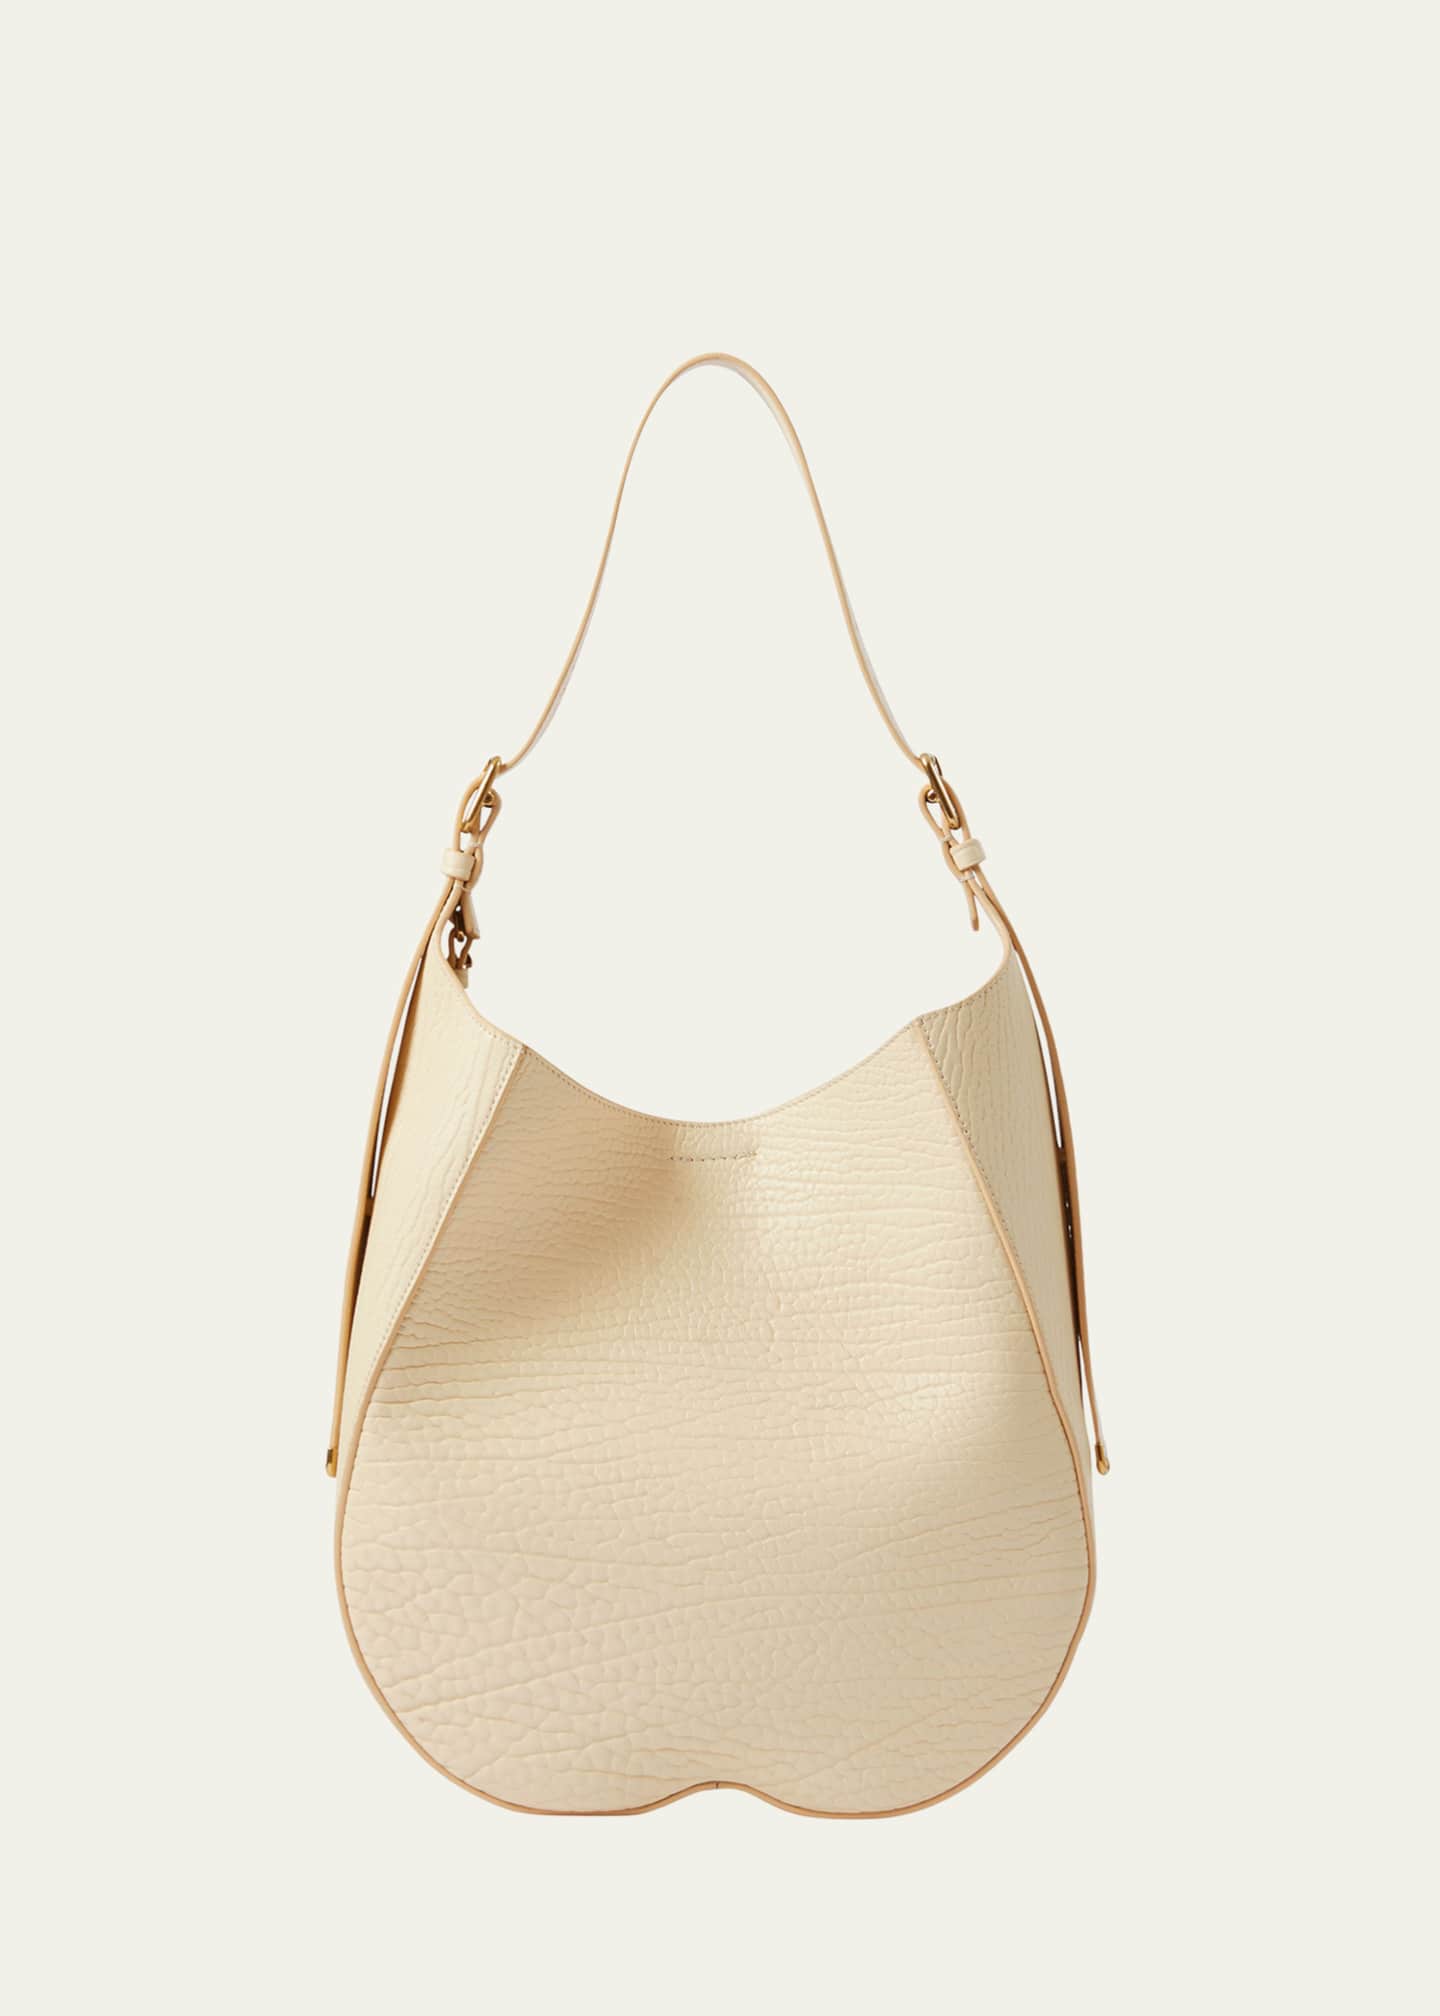 Burberry White Bags & Handbags for Women